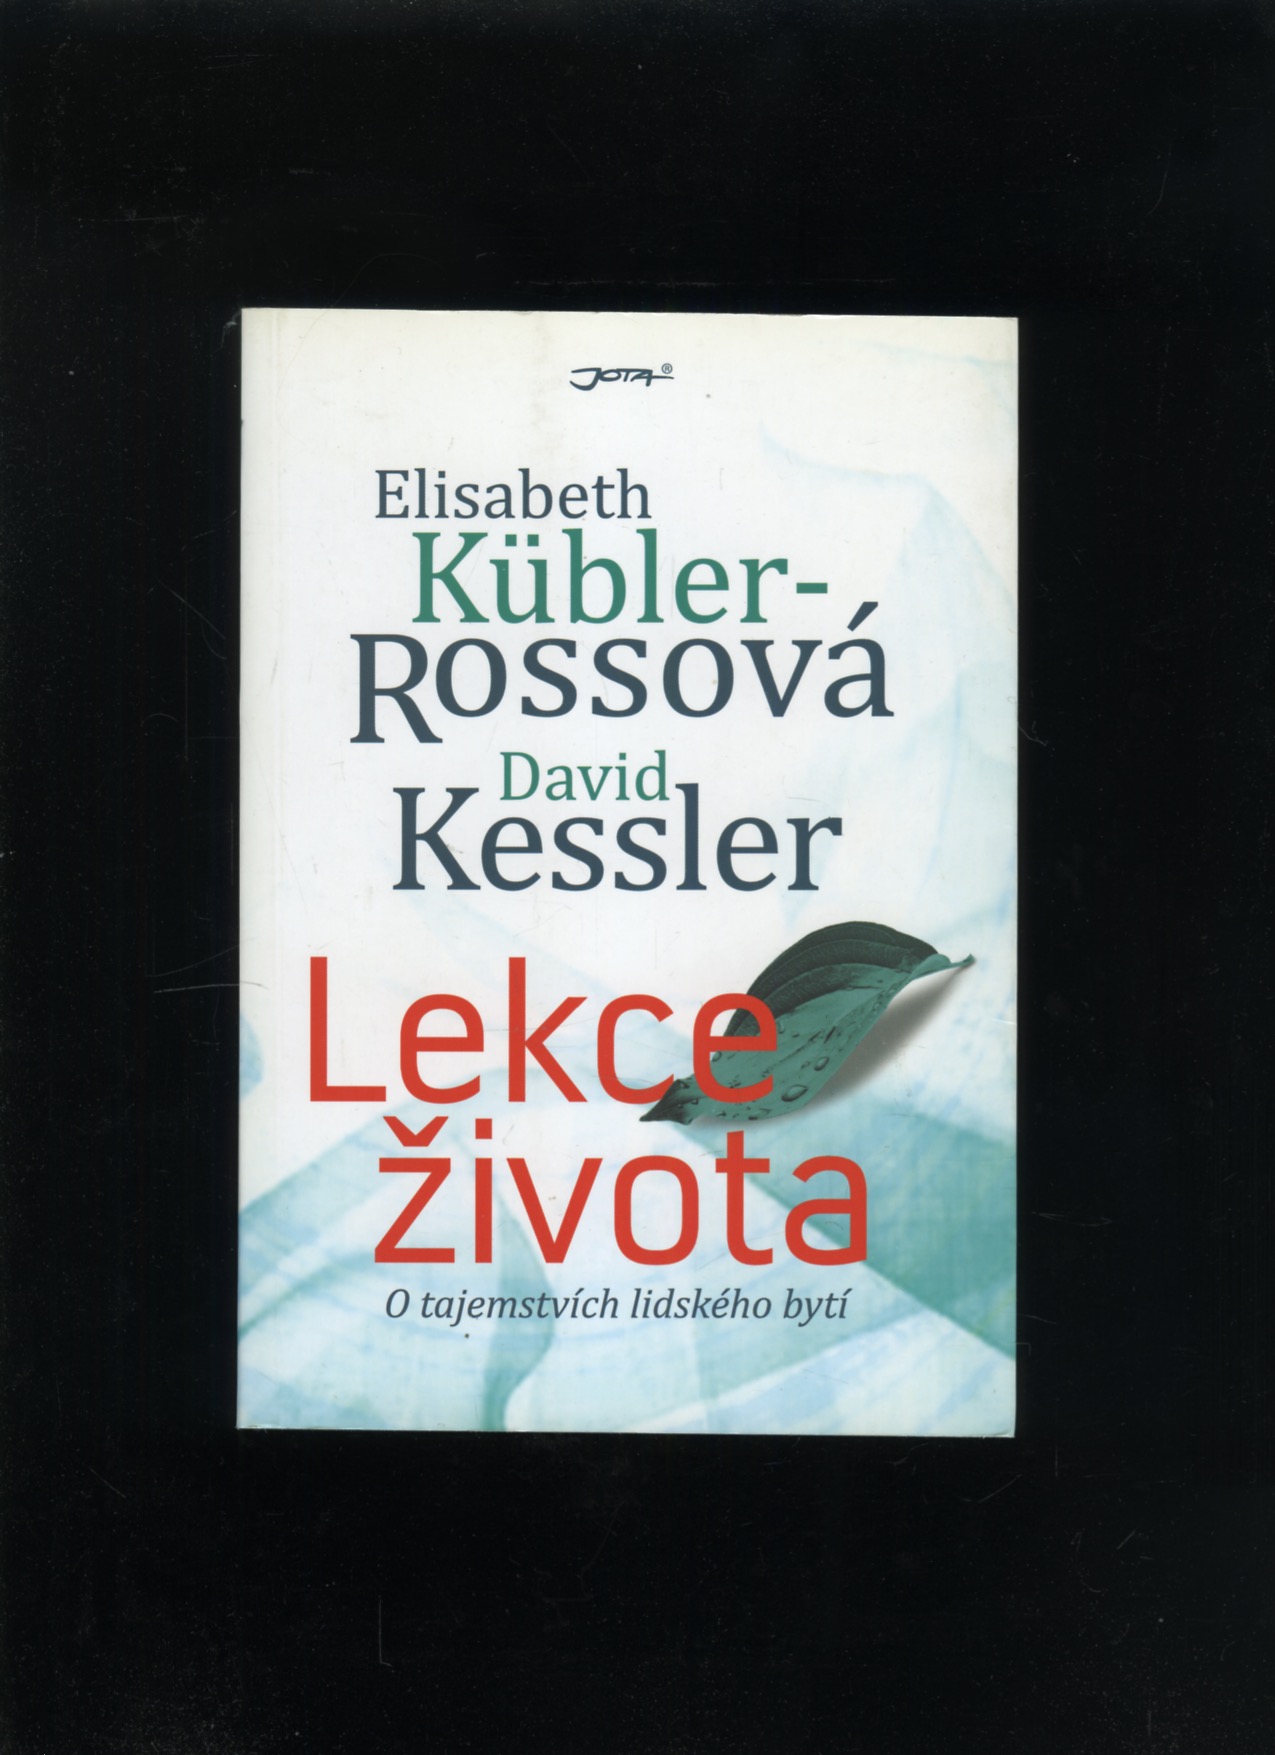 Lekce života (Elisabeth Kübler-Rossová, David Kessler)